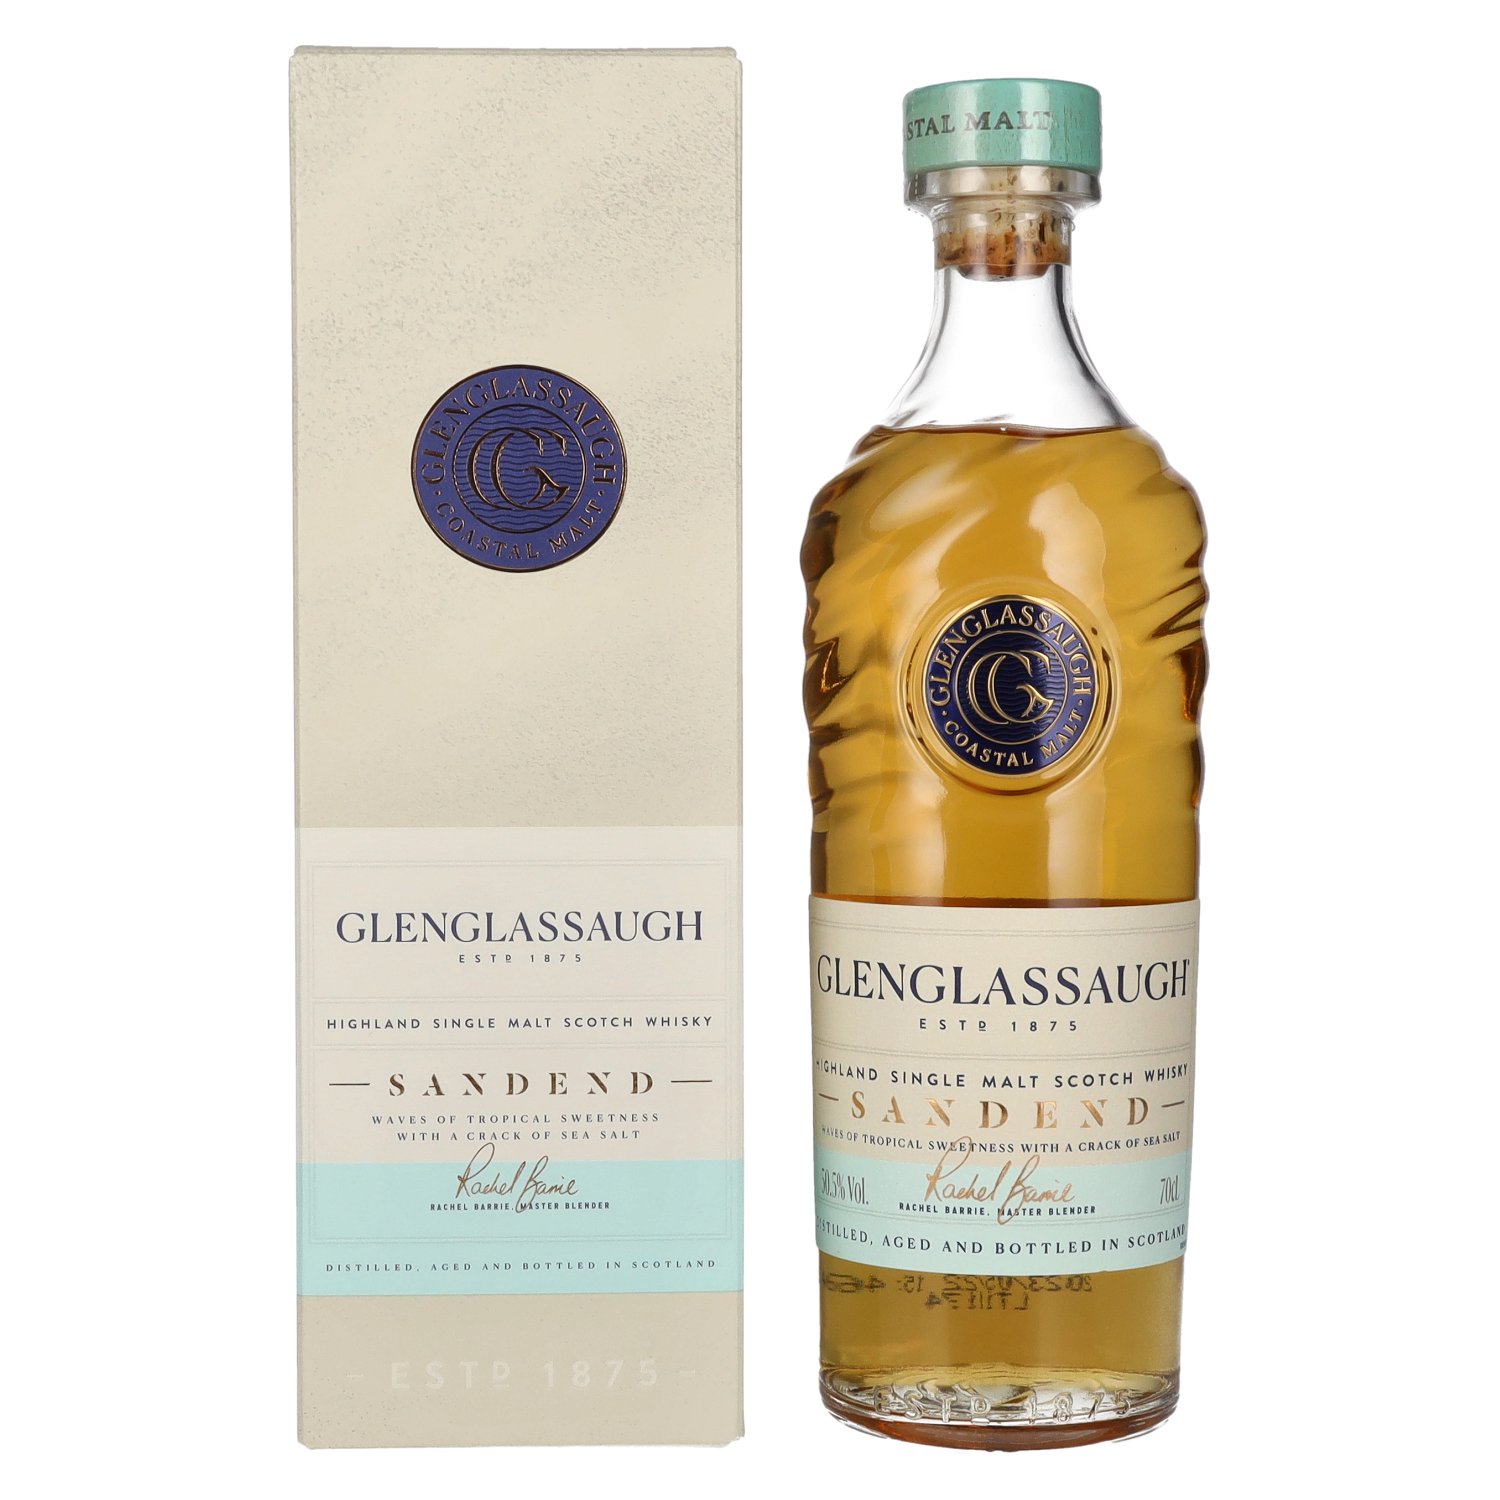 SANDEND Geschenkbox 50,5% Highland Single Whisky in Glenglassaugh 0,7l Scotch Vol. Malt